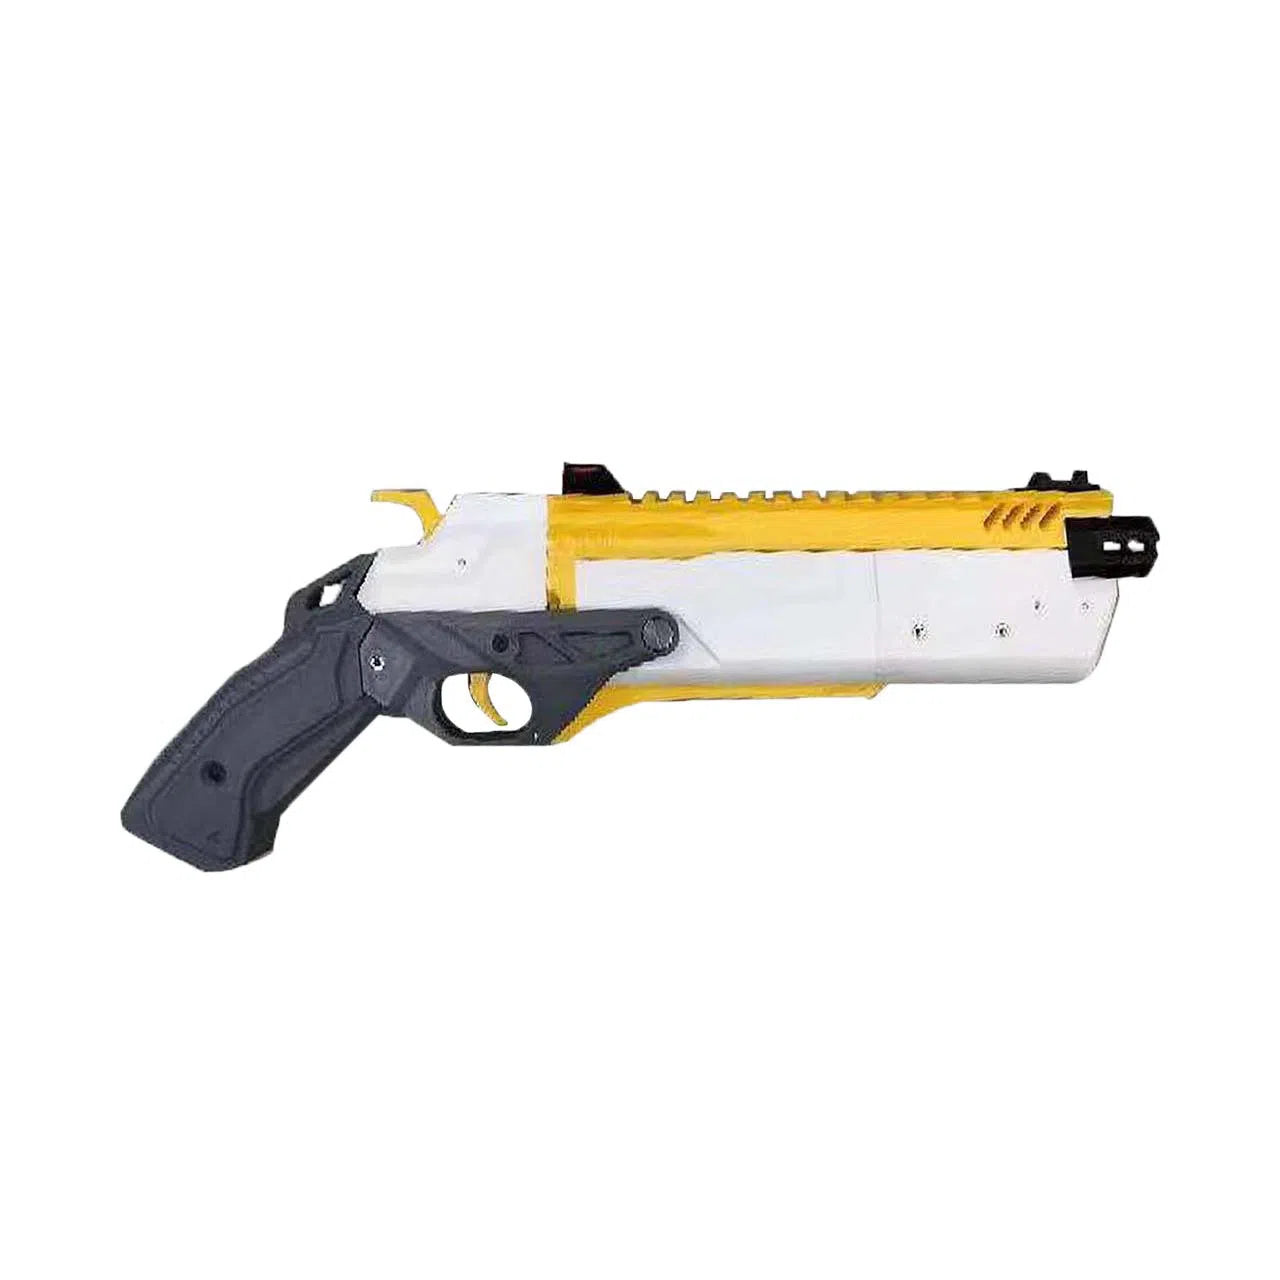 The Awaken (JingZhe) 3D Printed Break Action Blaster V2.7-m416gelblaster-white yellow black (non shell ejecting)-m416gelblaster